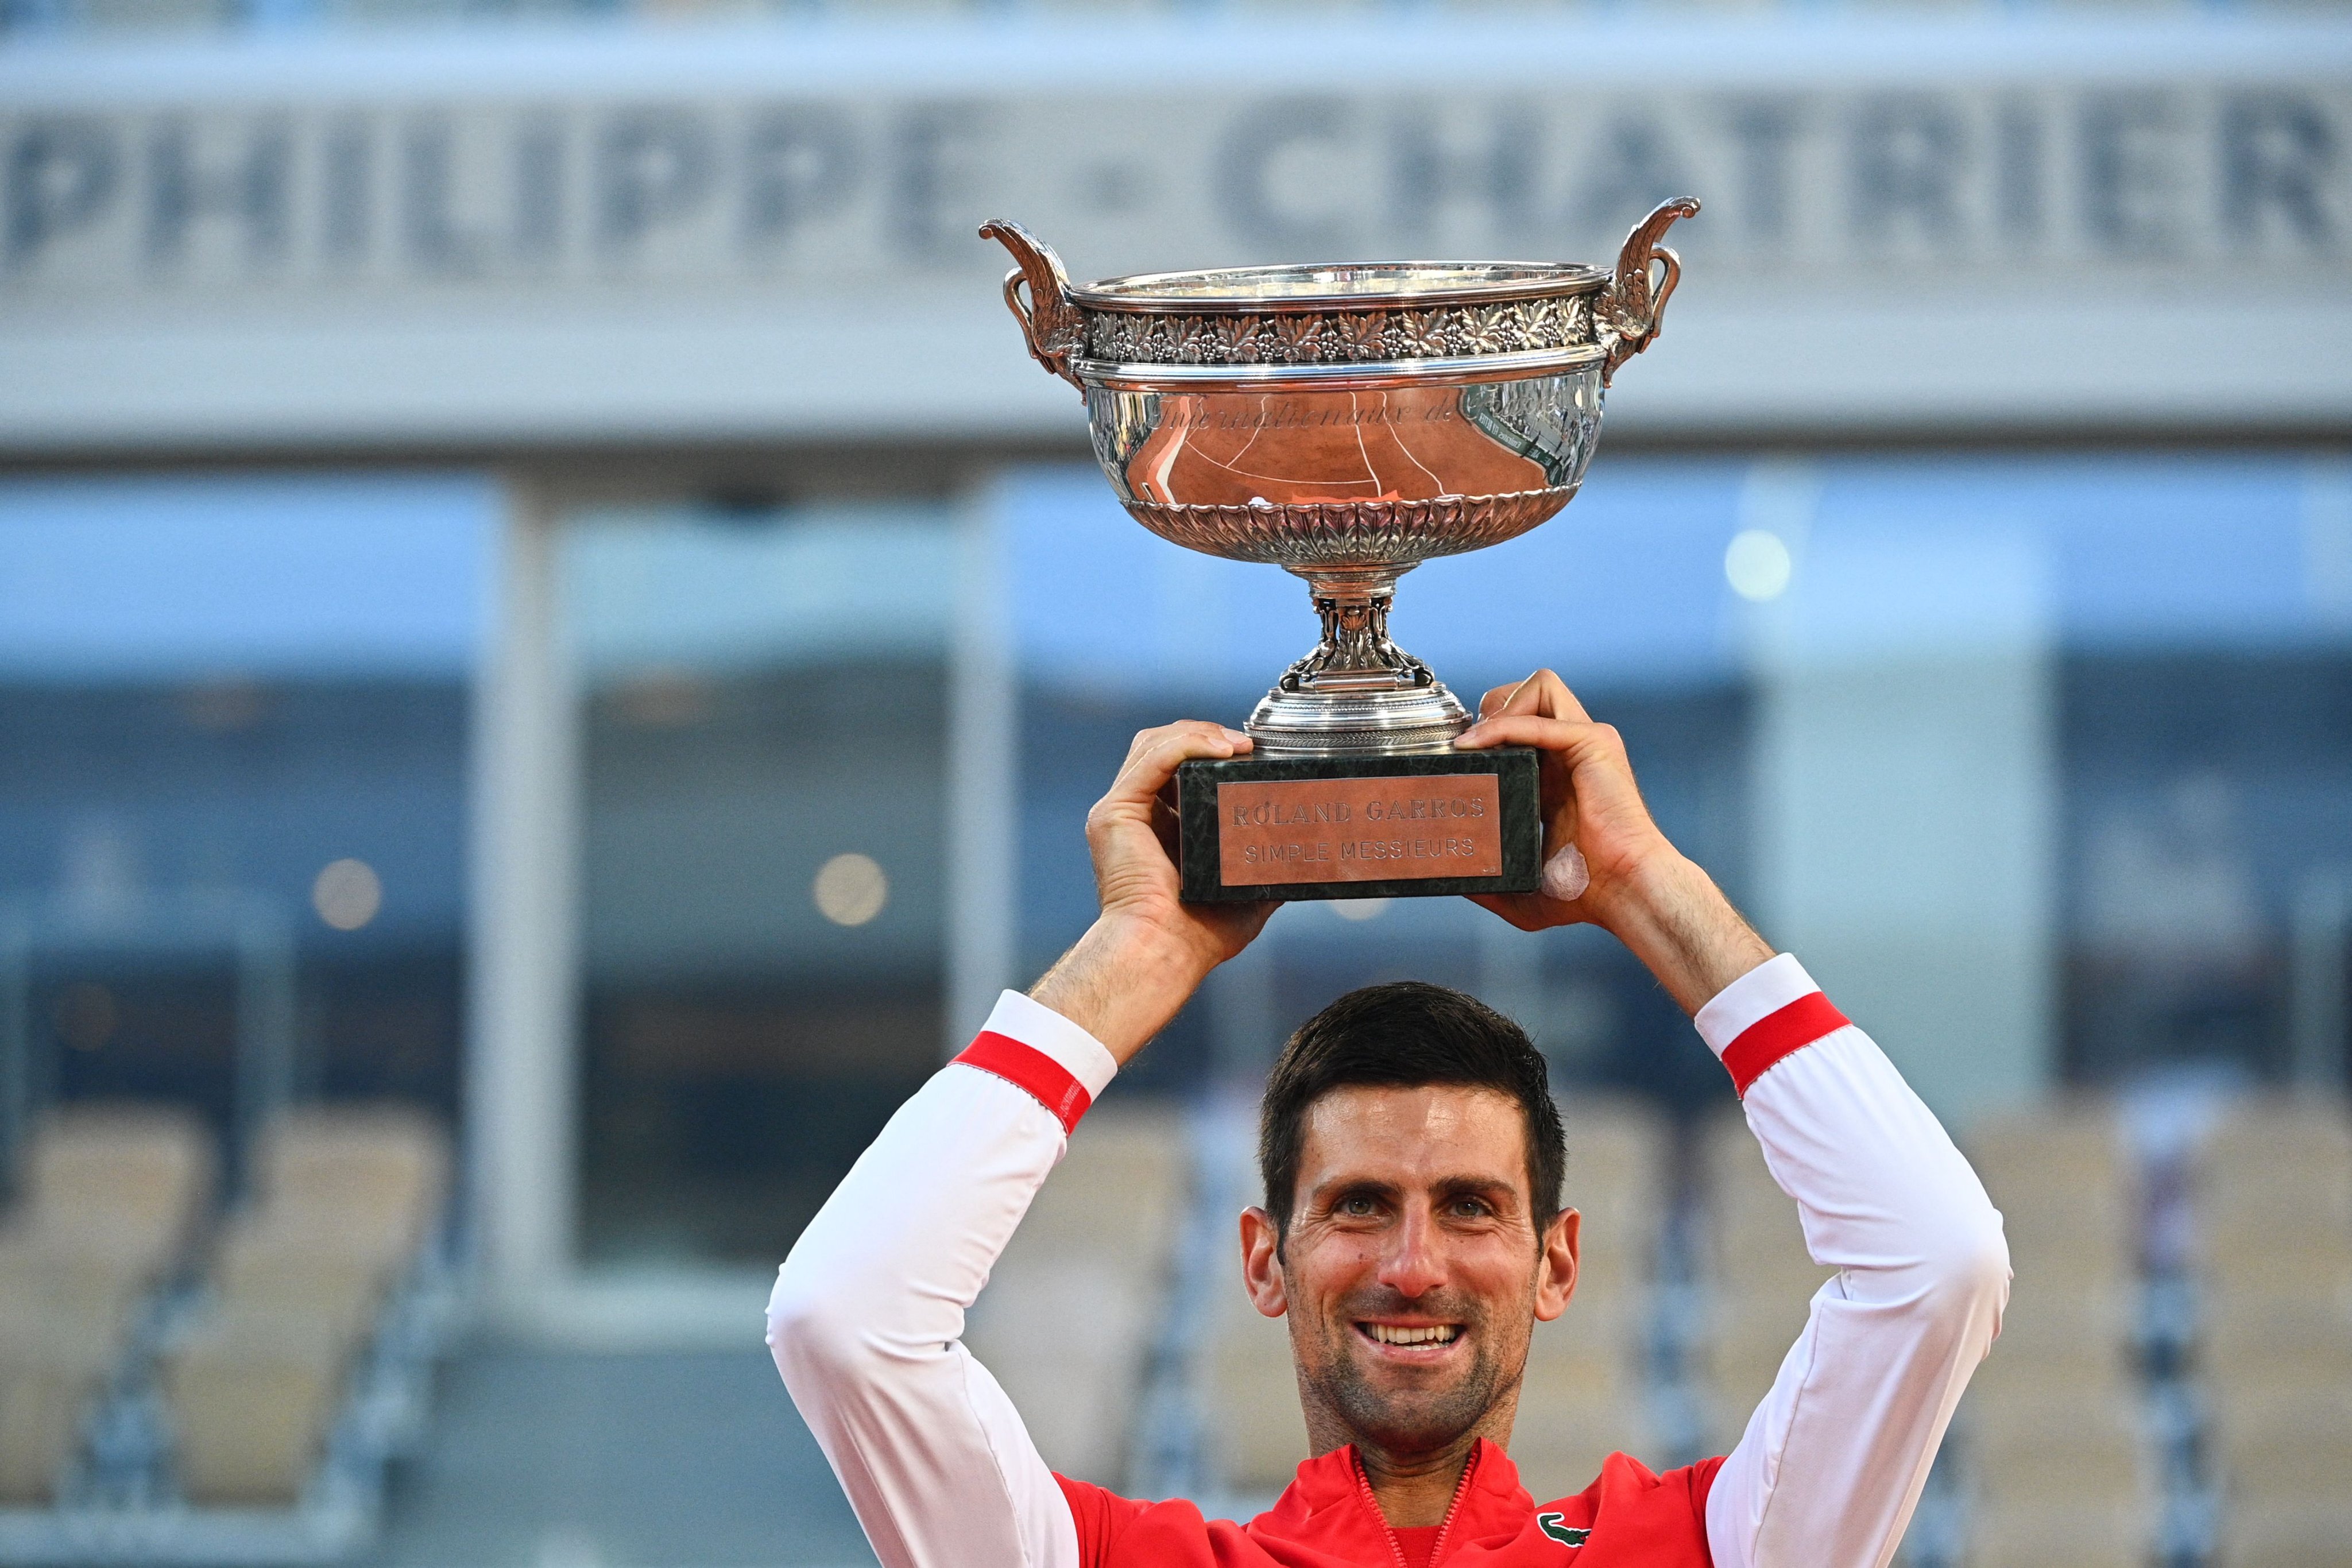 French Open title 2021- Novak Djokovic the first man in the career Grand Slam twice  French Open title 2021  Novak Djokovic  Stefanos Tsitsipas  பிரெஞ்ச் ஓபன் 2021  பிரெஞ்ச் ஓபன்  நோவக் ஜோகோவிச்  ராட் லாவர்  ஸ்டீபனோஸ் சிட்சிபாஸ்  ஜோகோவிச்